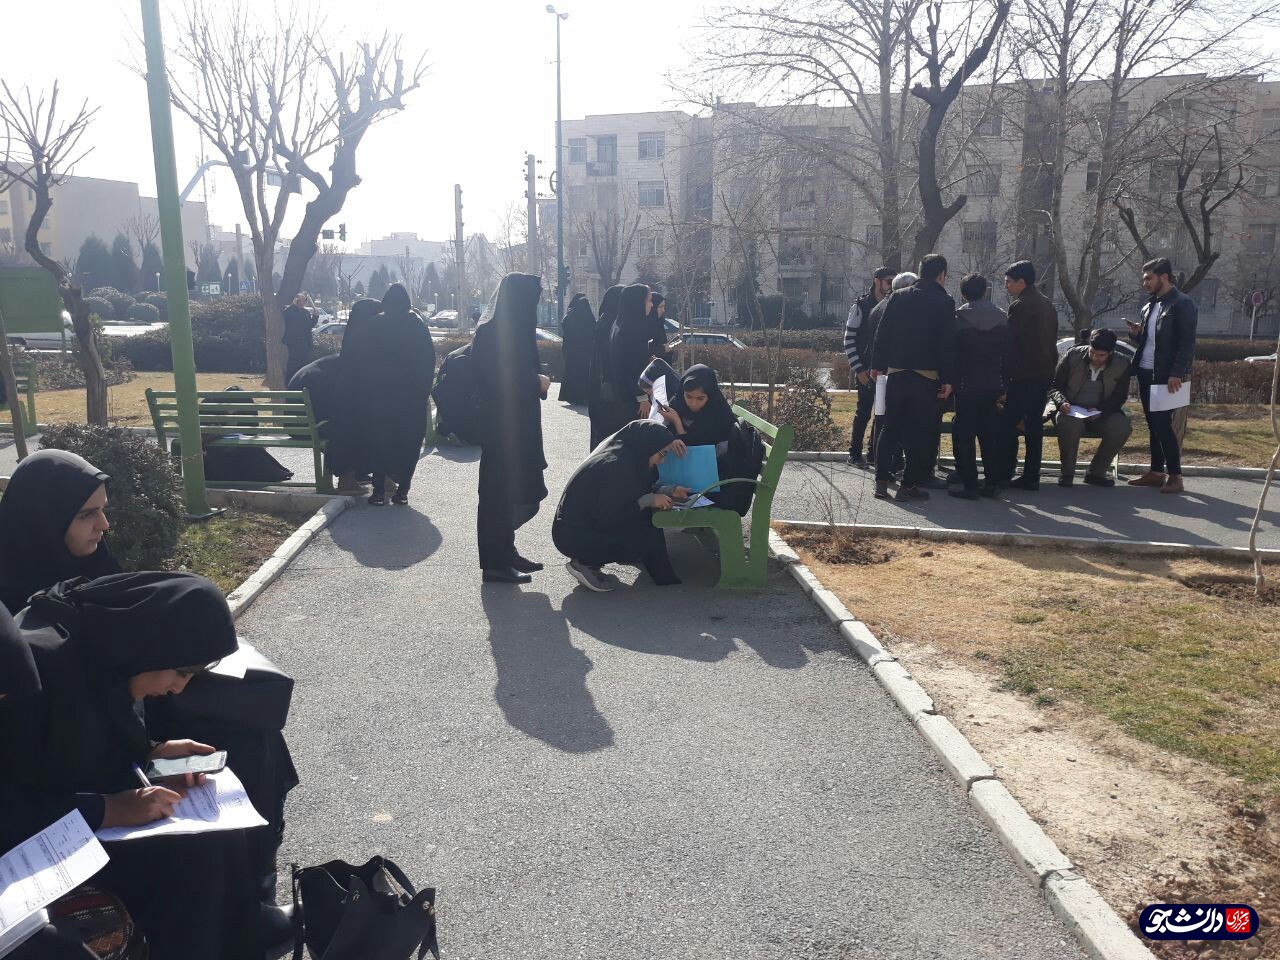 دانشجو معلمان ورودی ۹۷ دانشگاه فرهنگیان به دیوان عدالت شکایت کردند+ تصاویر